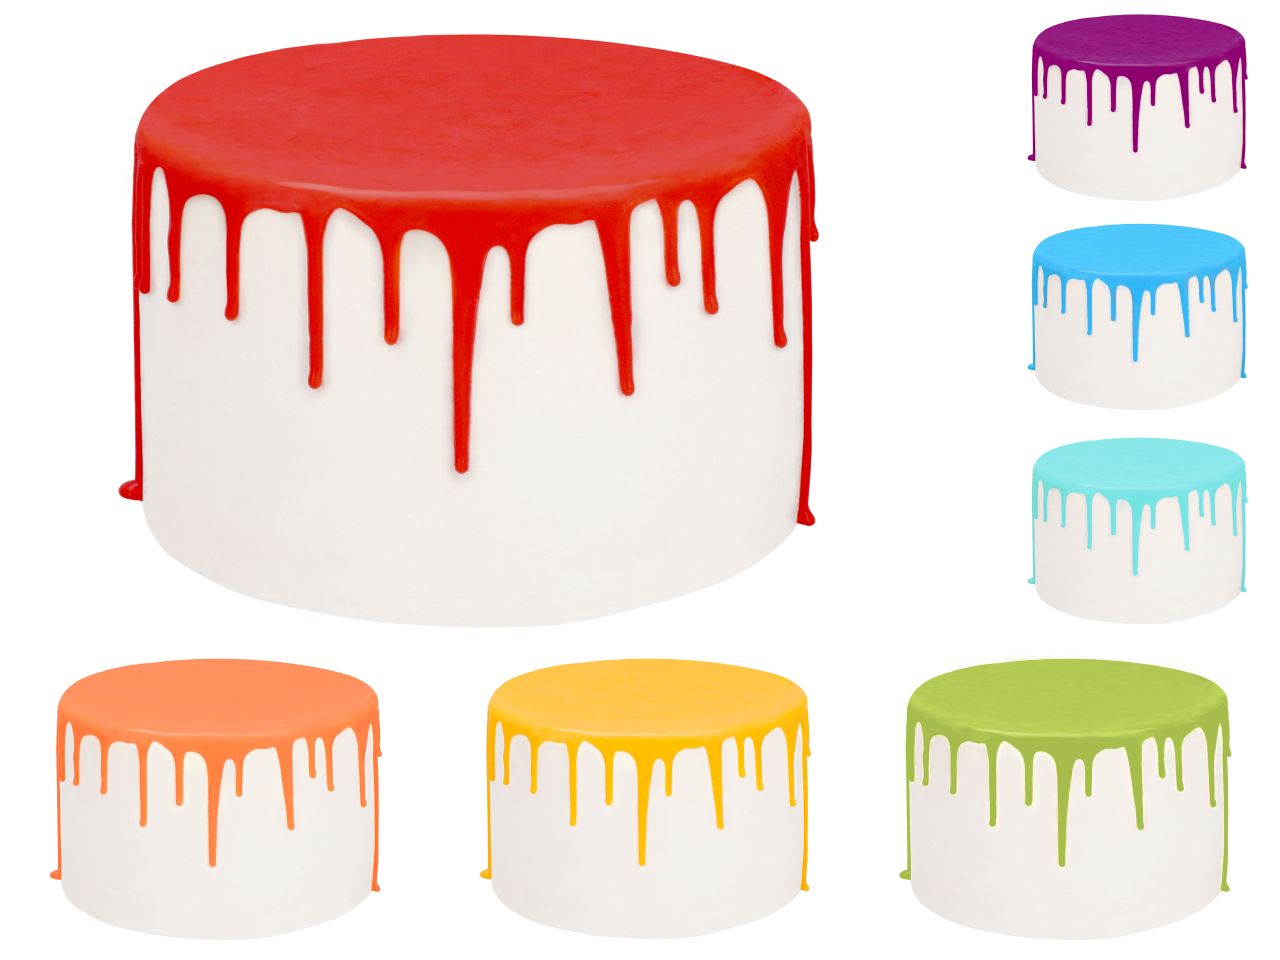 Drip Cake-Glasur Rainbow Set, 7 Farben, inkl. Spritzflasche, 7 x 250 g